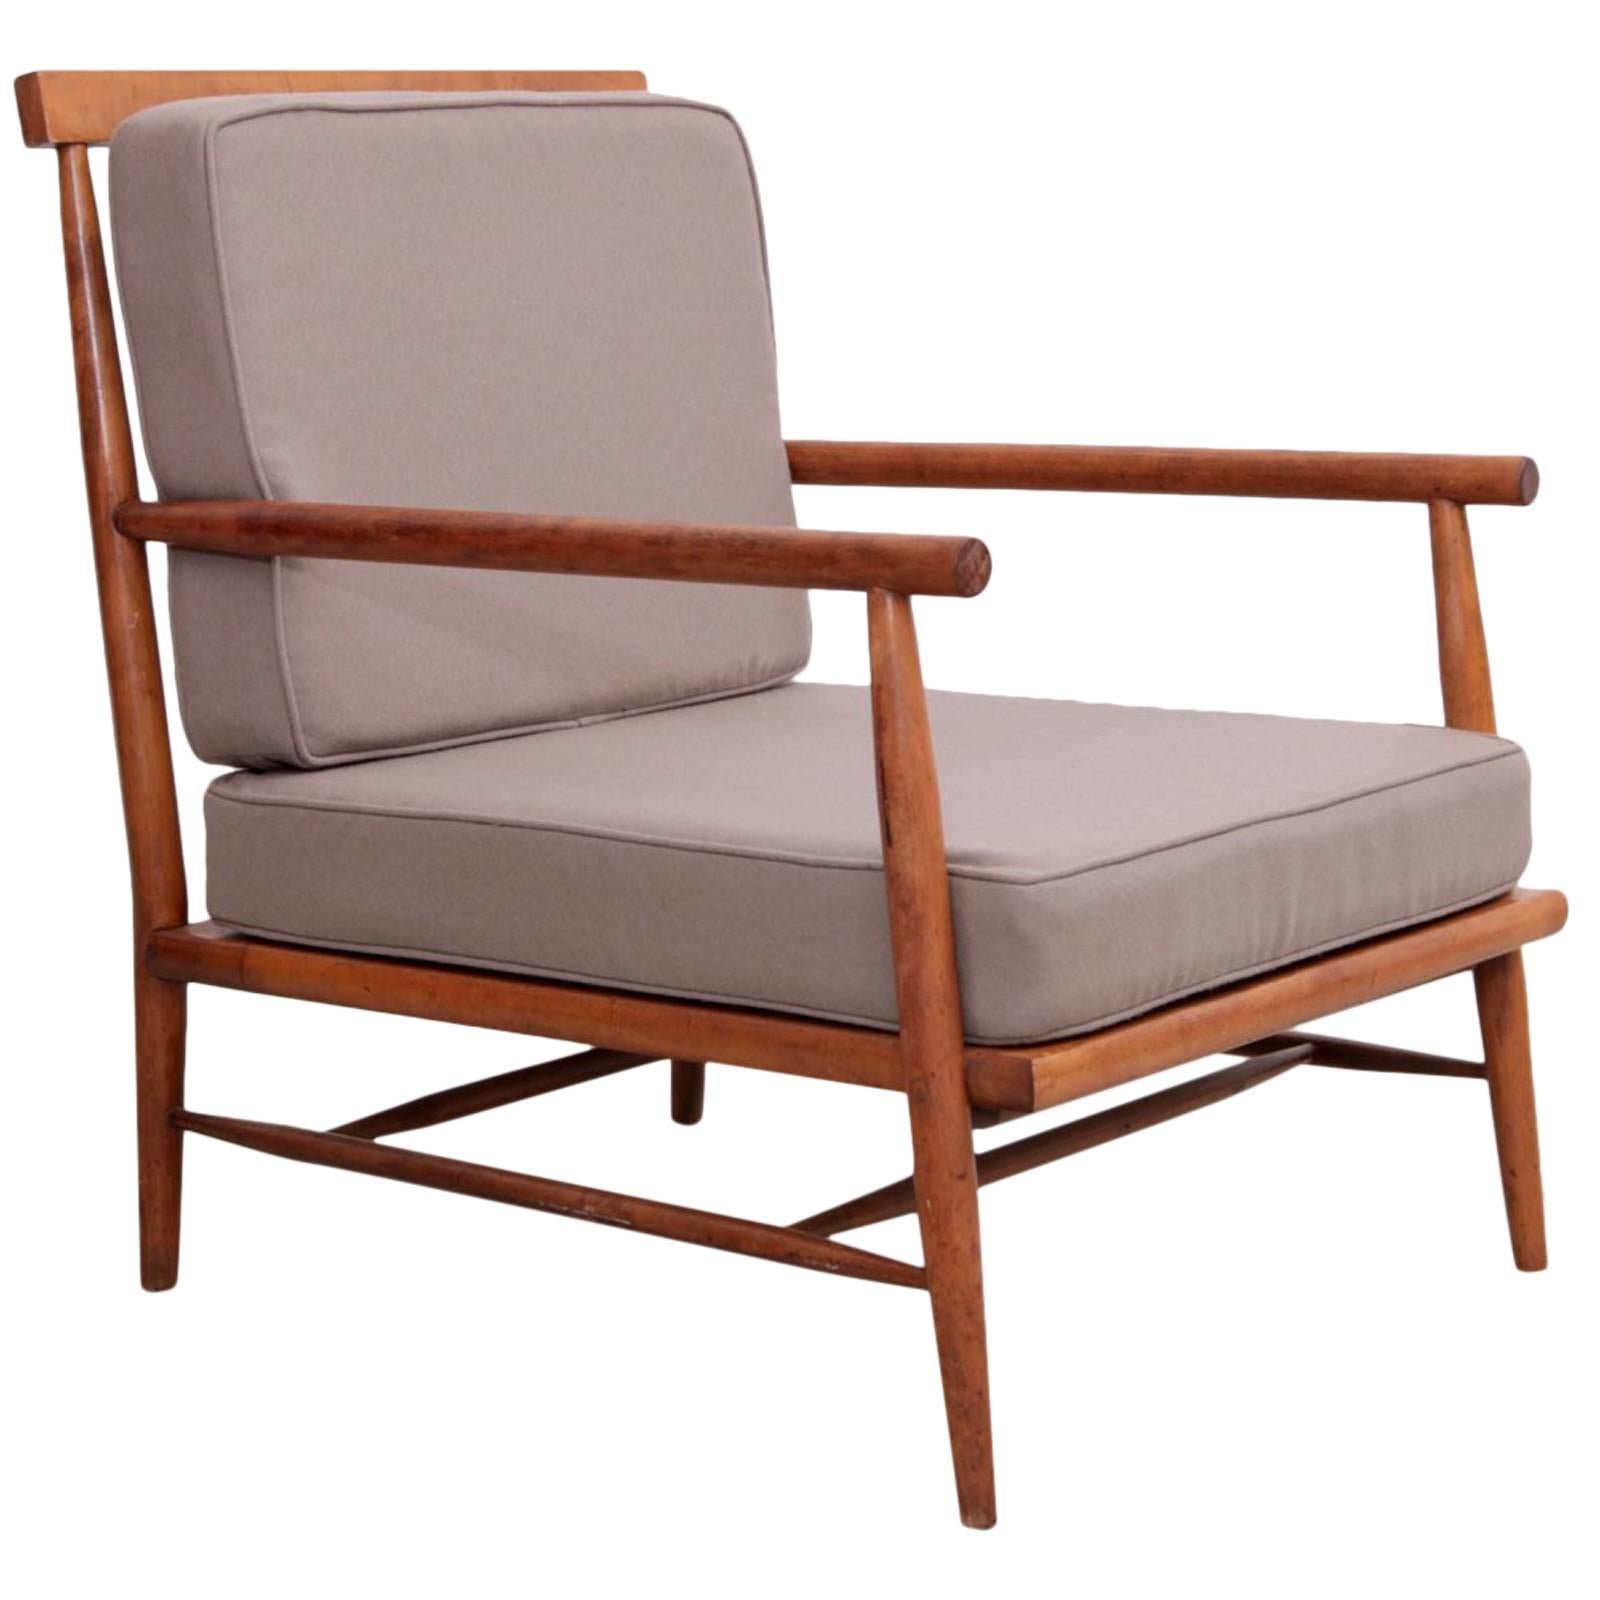 Rare Paul McCobb Lounge Chair for O'hearn